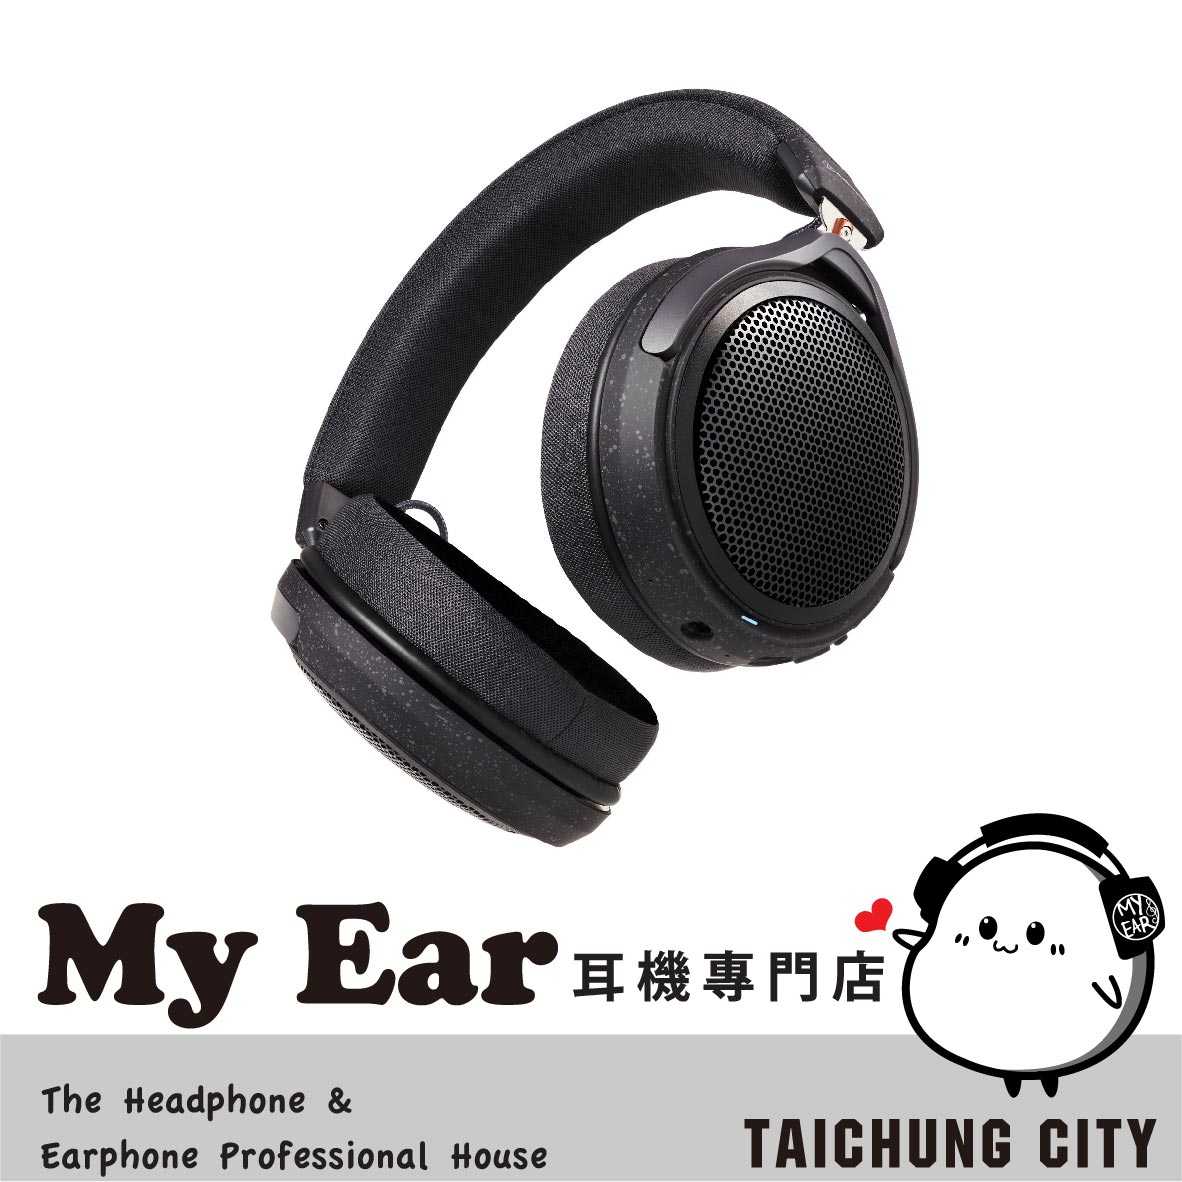 鐵三角 ATH-HL7BT 低延遲 53mm驅動 專用App 開放型 耳罩式 藍芽耳機 | My Ear耳機專門店